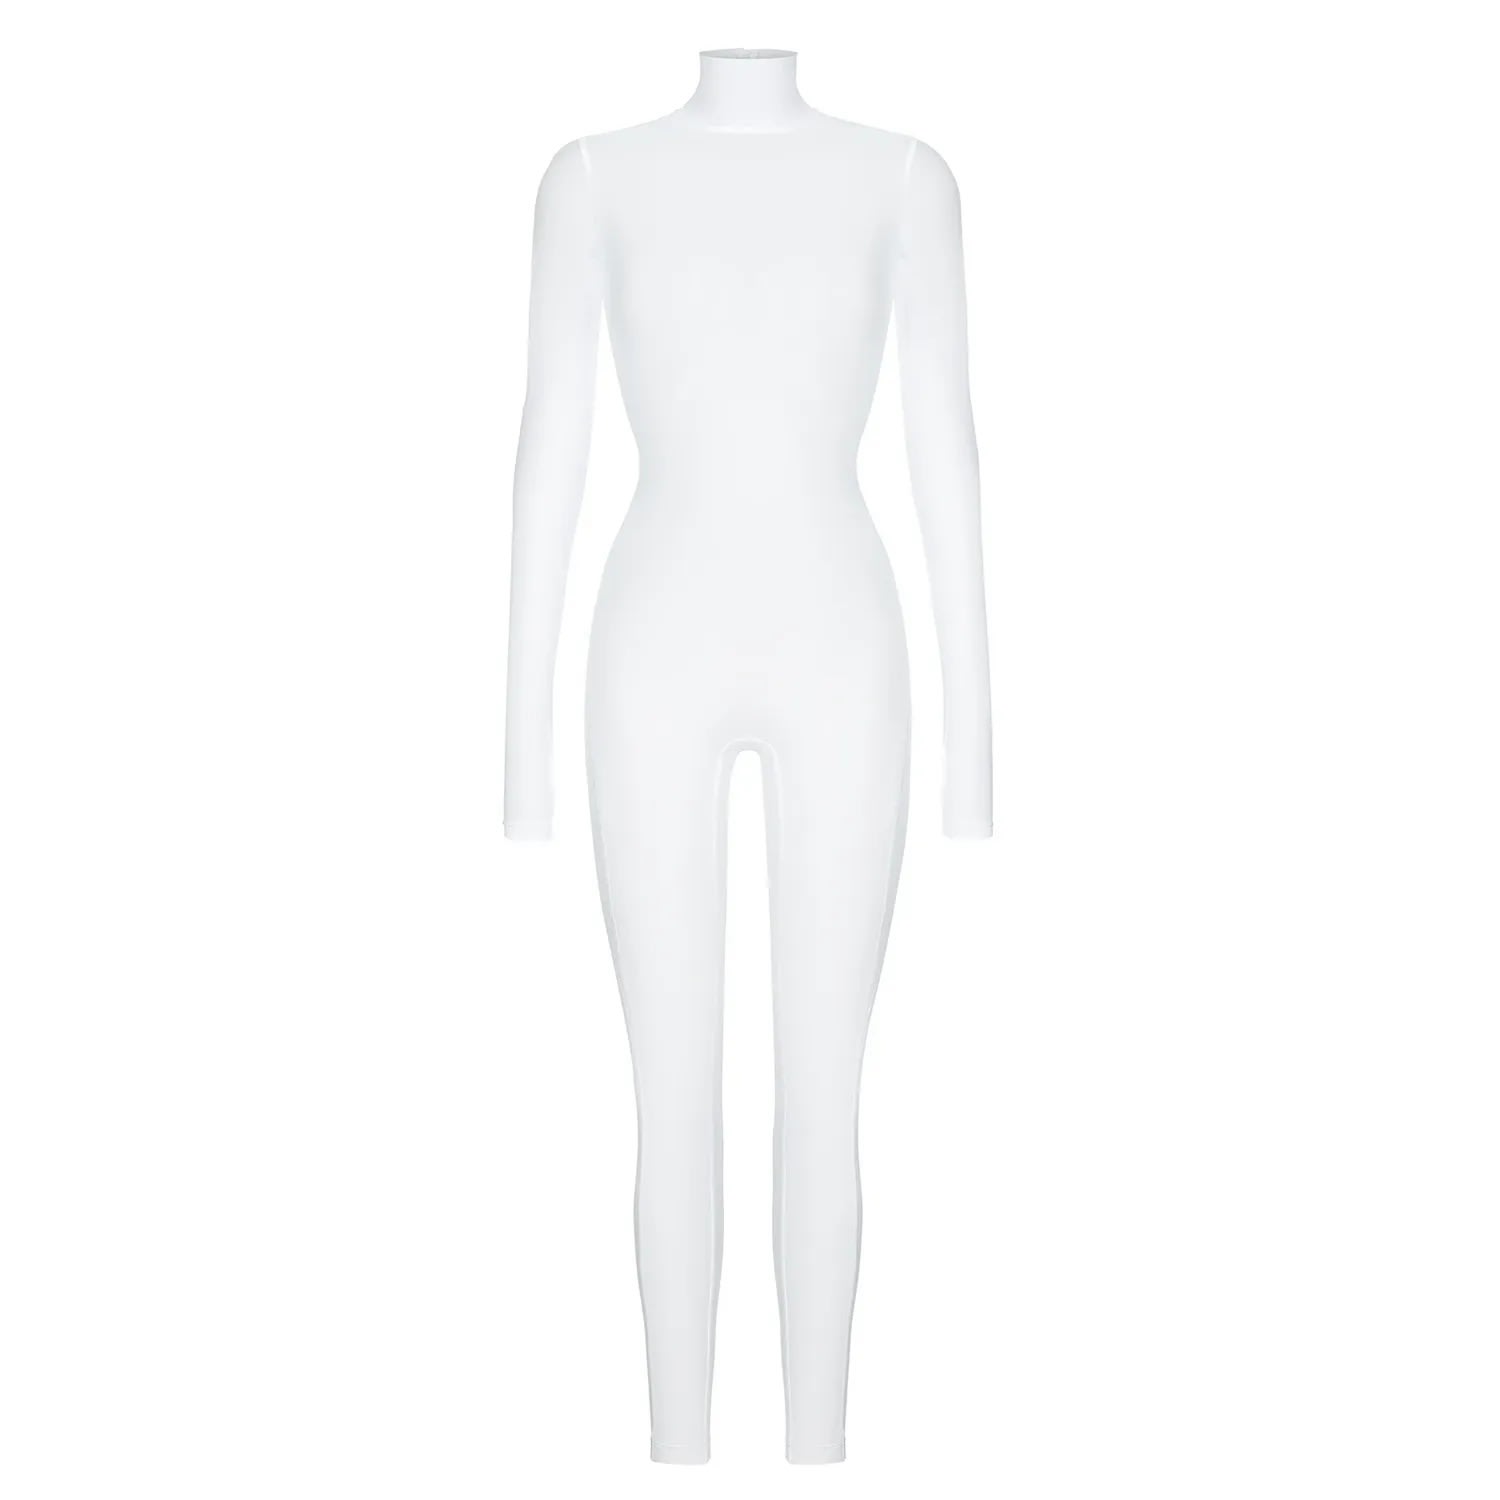 Women's Monoskin Jumpsuit Mesh - White Large Monosuit